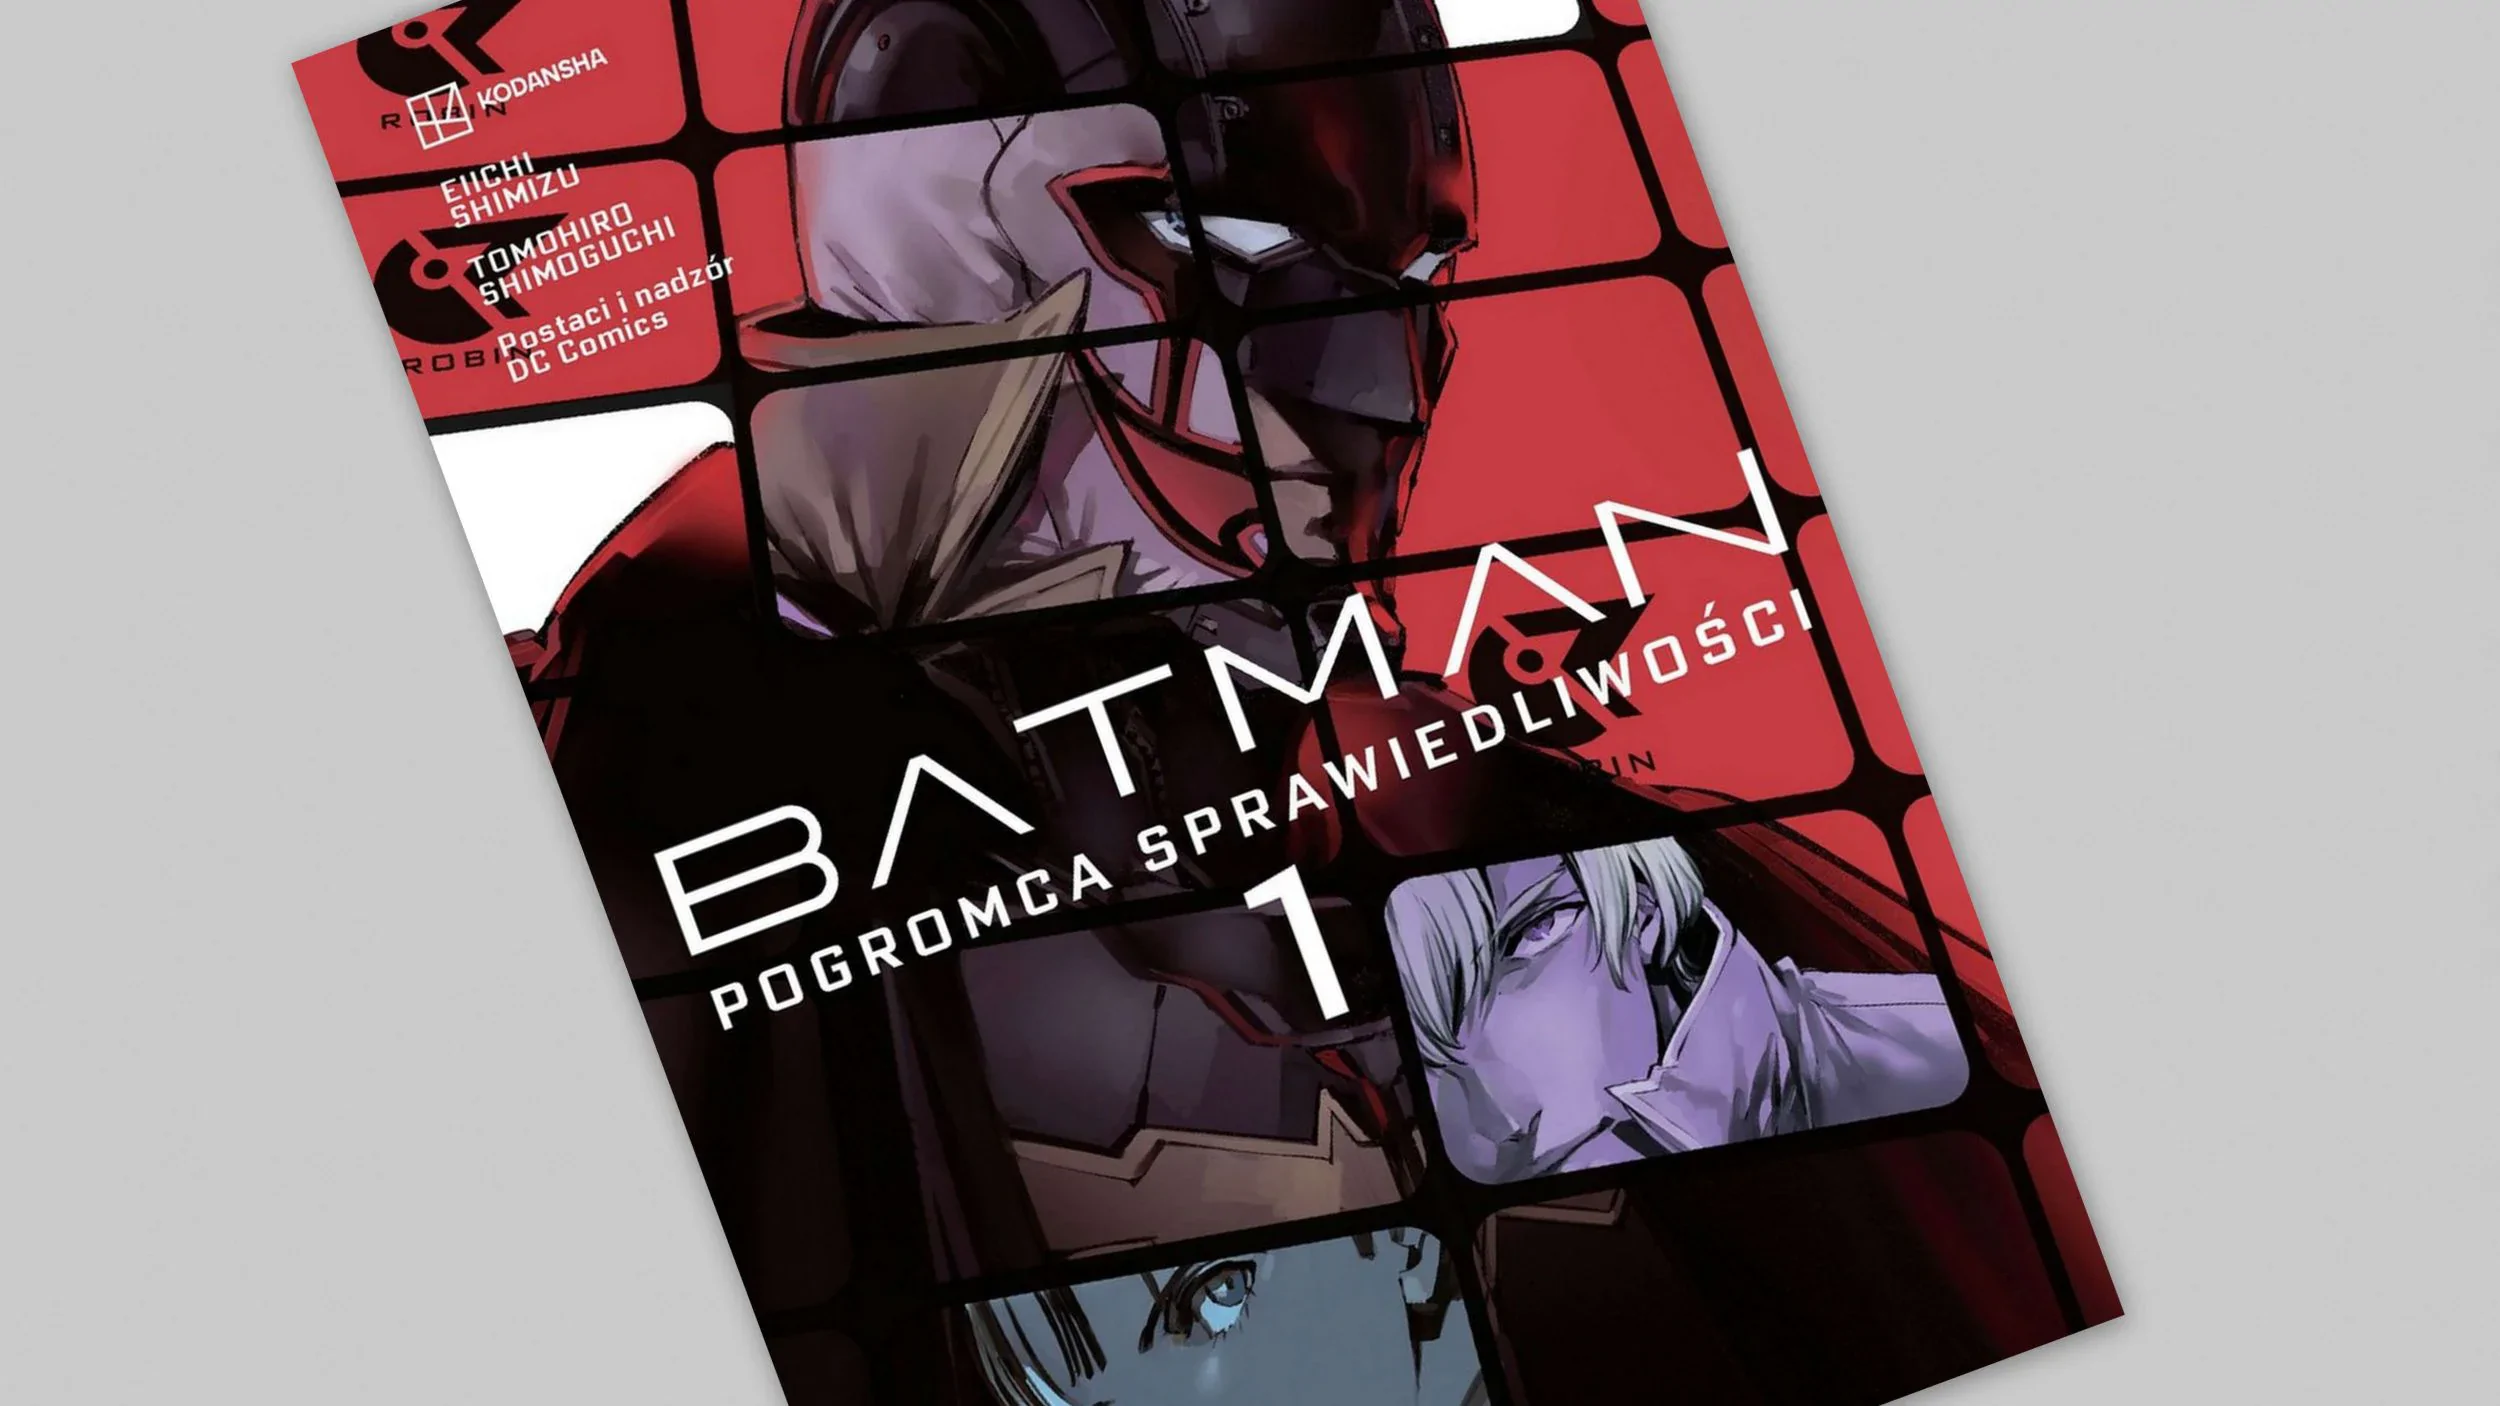 Batman - Pogromca sprawiedliwości tom 1 - recenzja komiksu